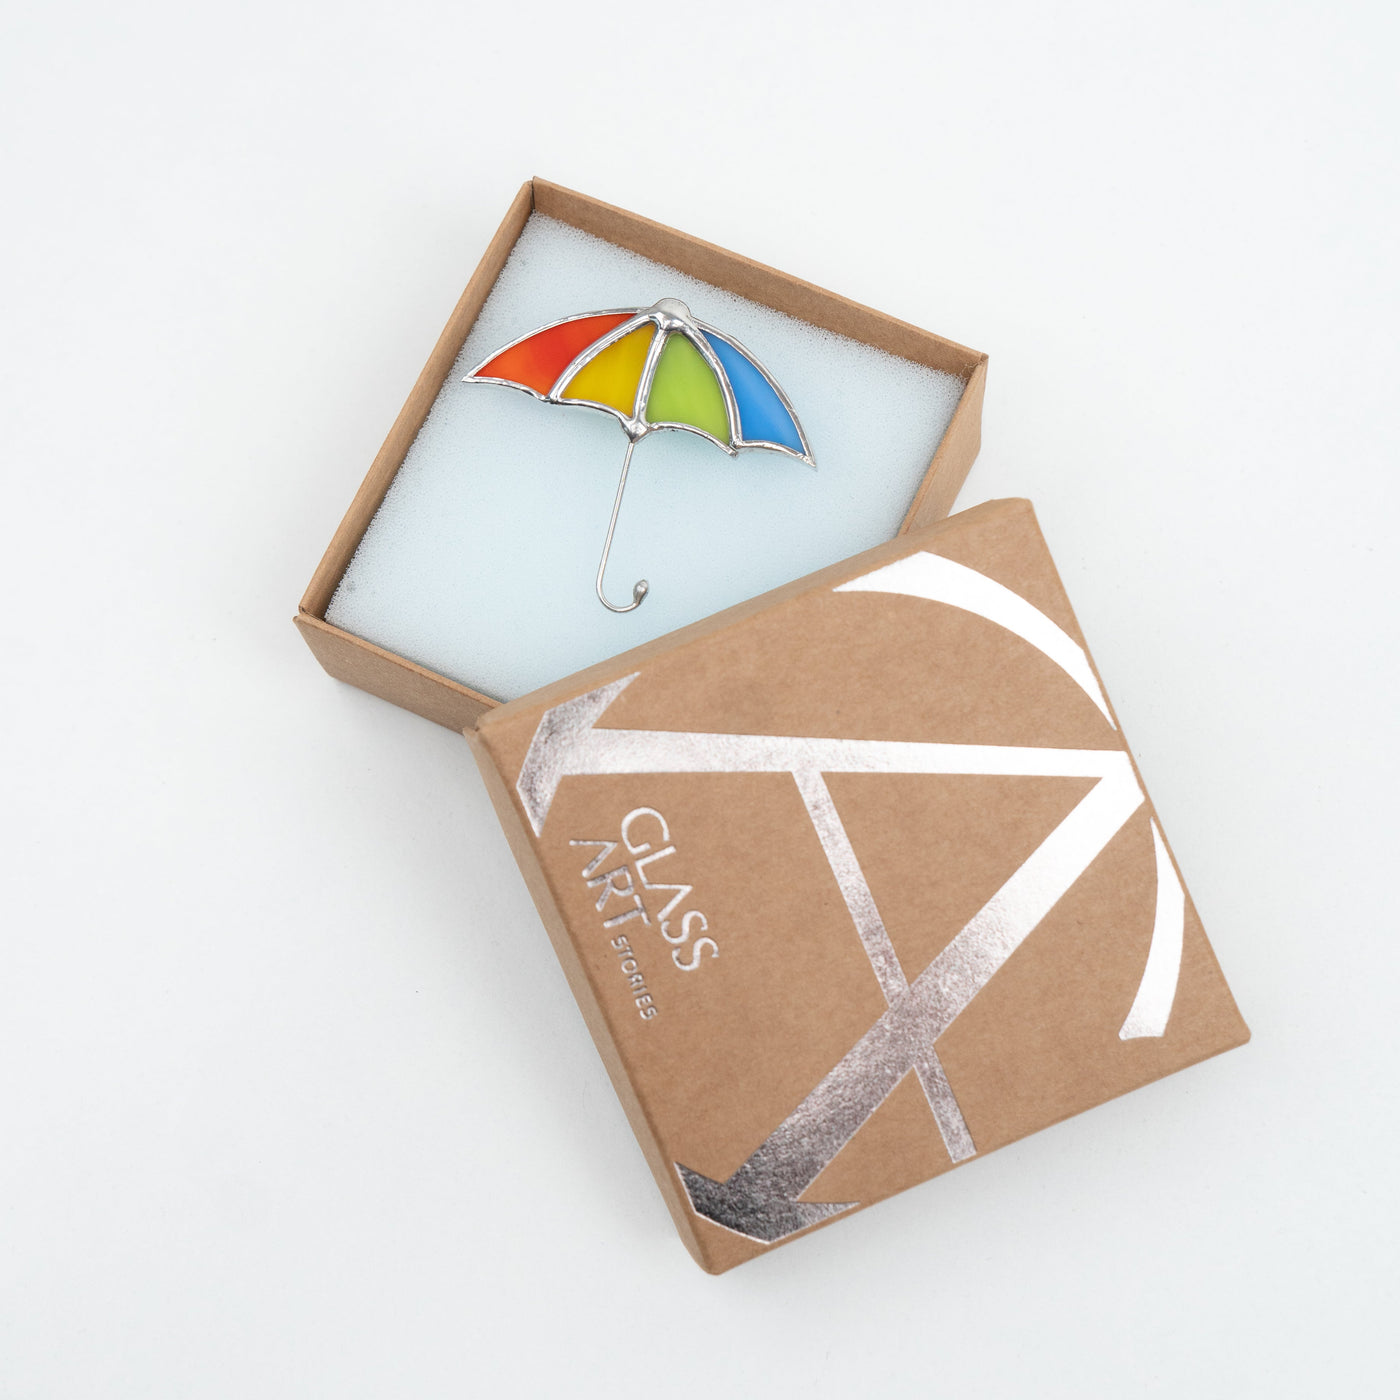 Multicolor umbrella pin in a brand box